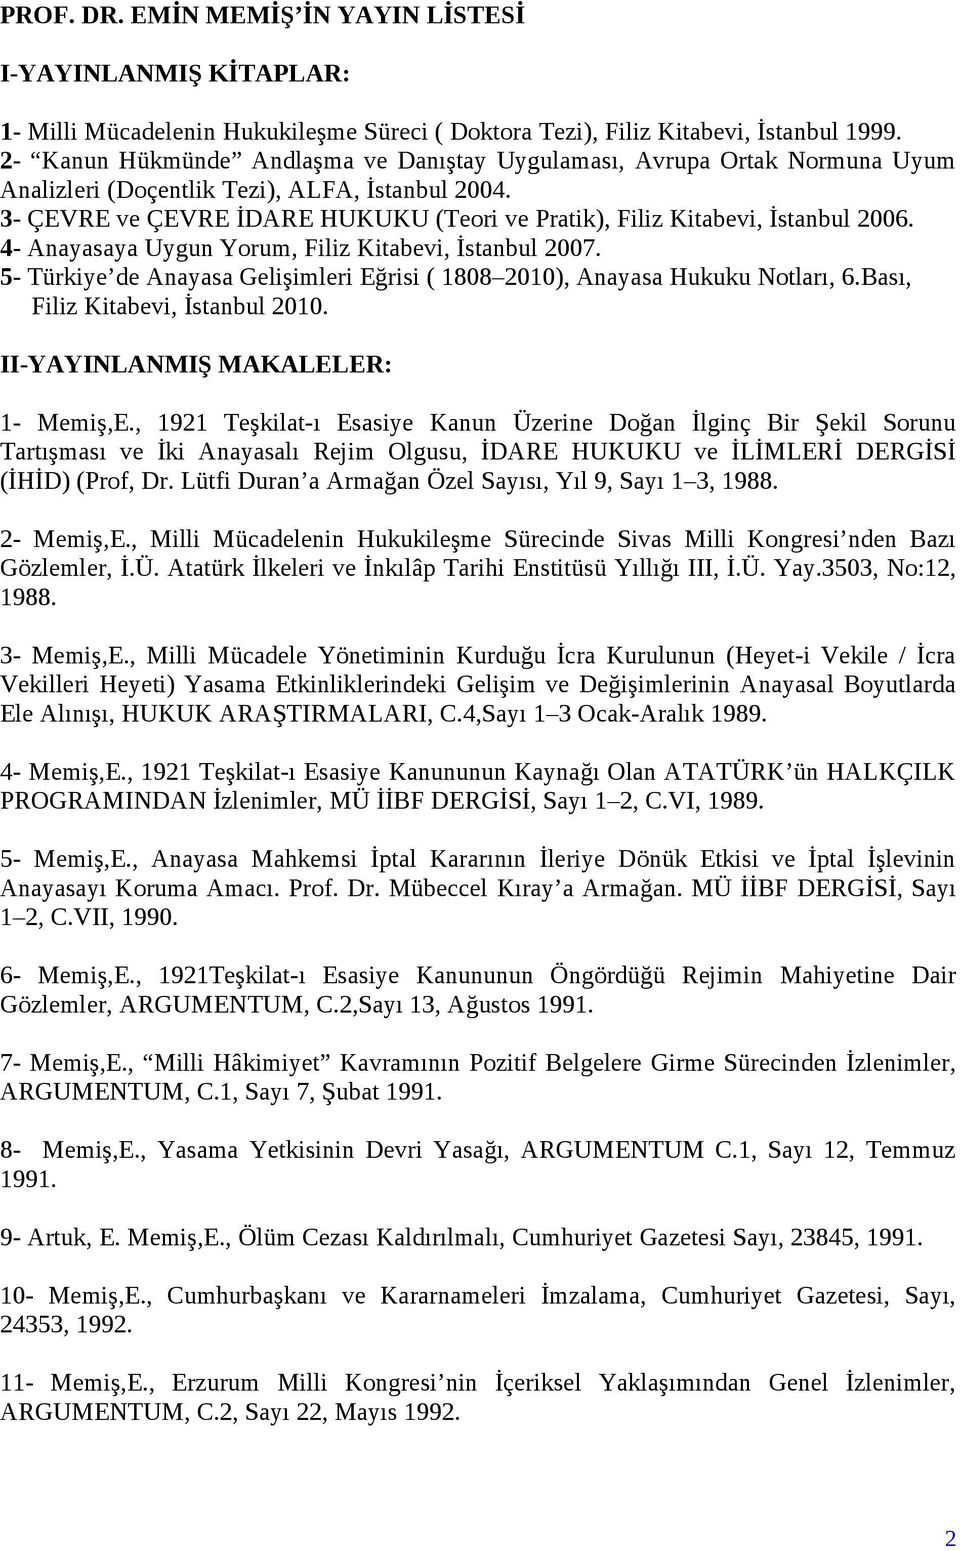 3- ÇEVRE ve ÇEVRE İDARE HUKUKU (Teori ve Pratik), Filiz Kitabevi, İstanbul 2006. 4- Anayasaya Uygun Yorum, Filiz Kitabevi, İstanbul 2007.